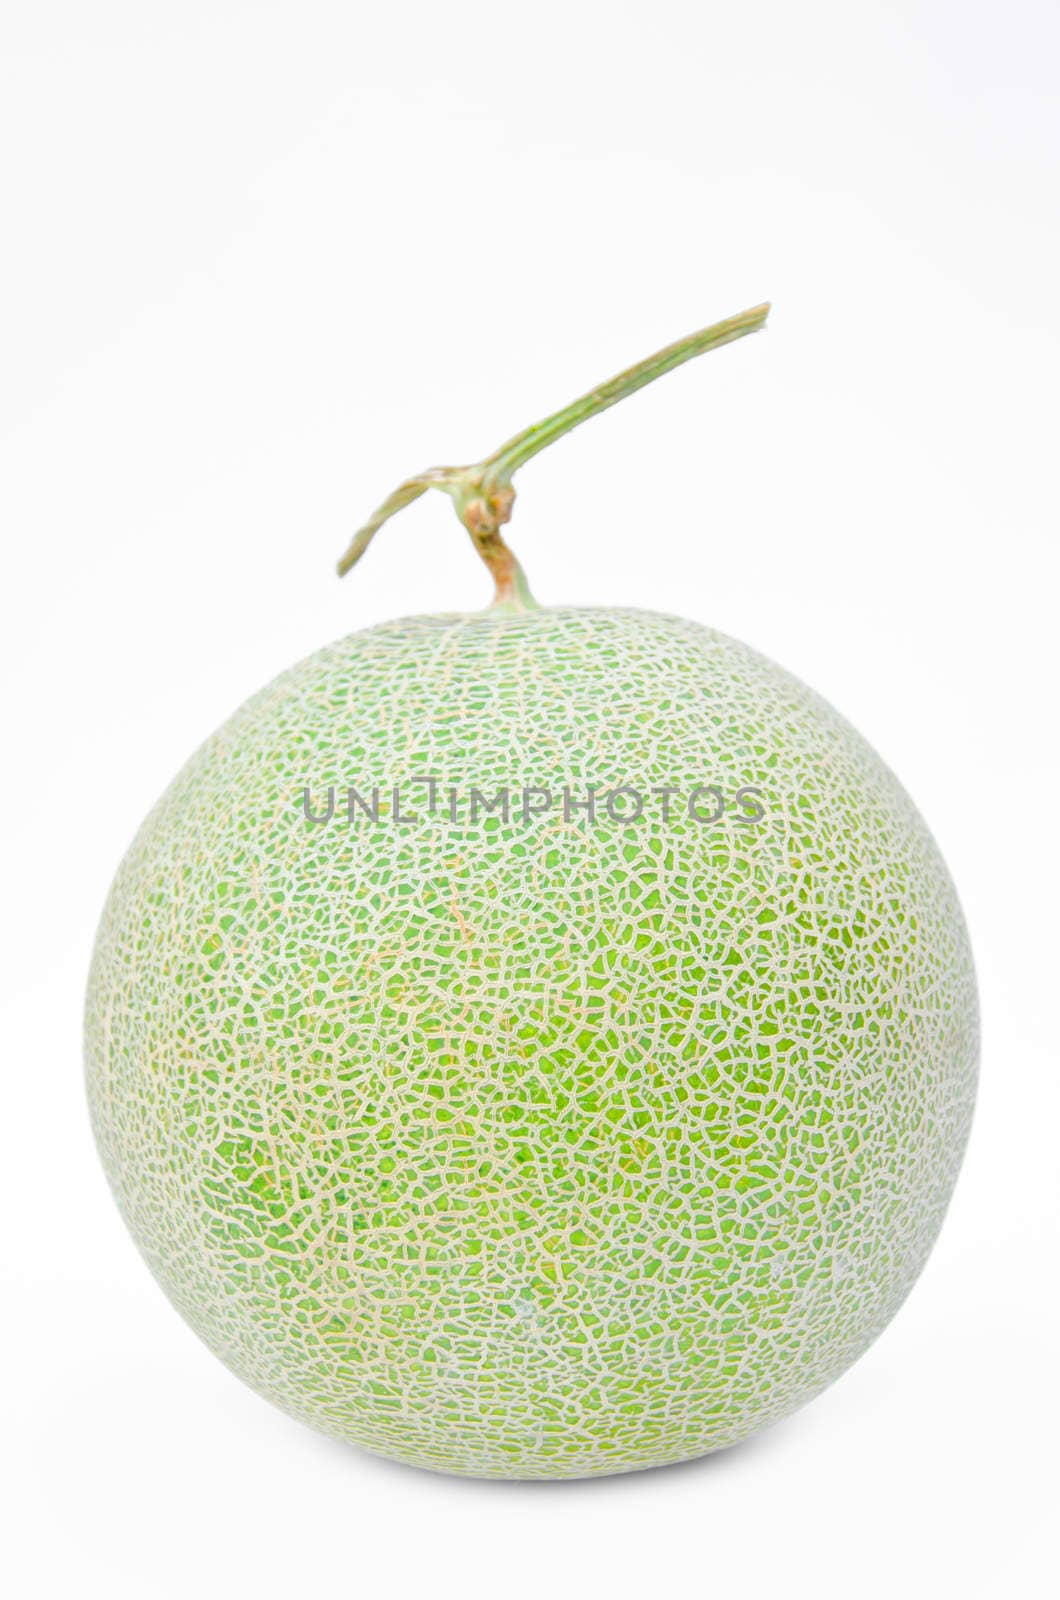 Big fresh Melon by Gamjai